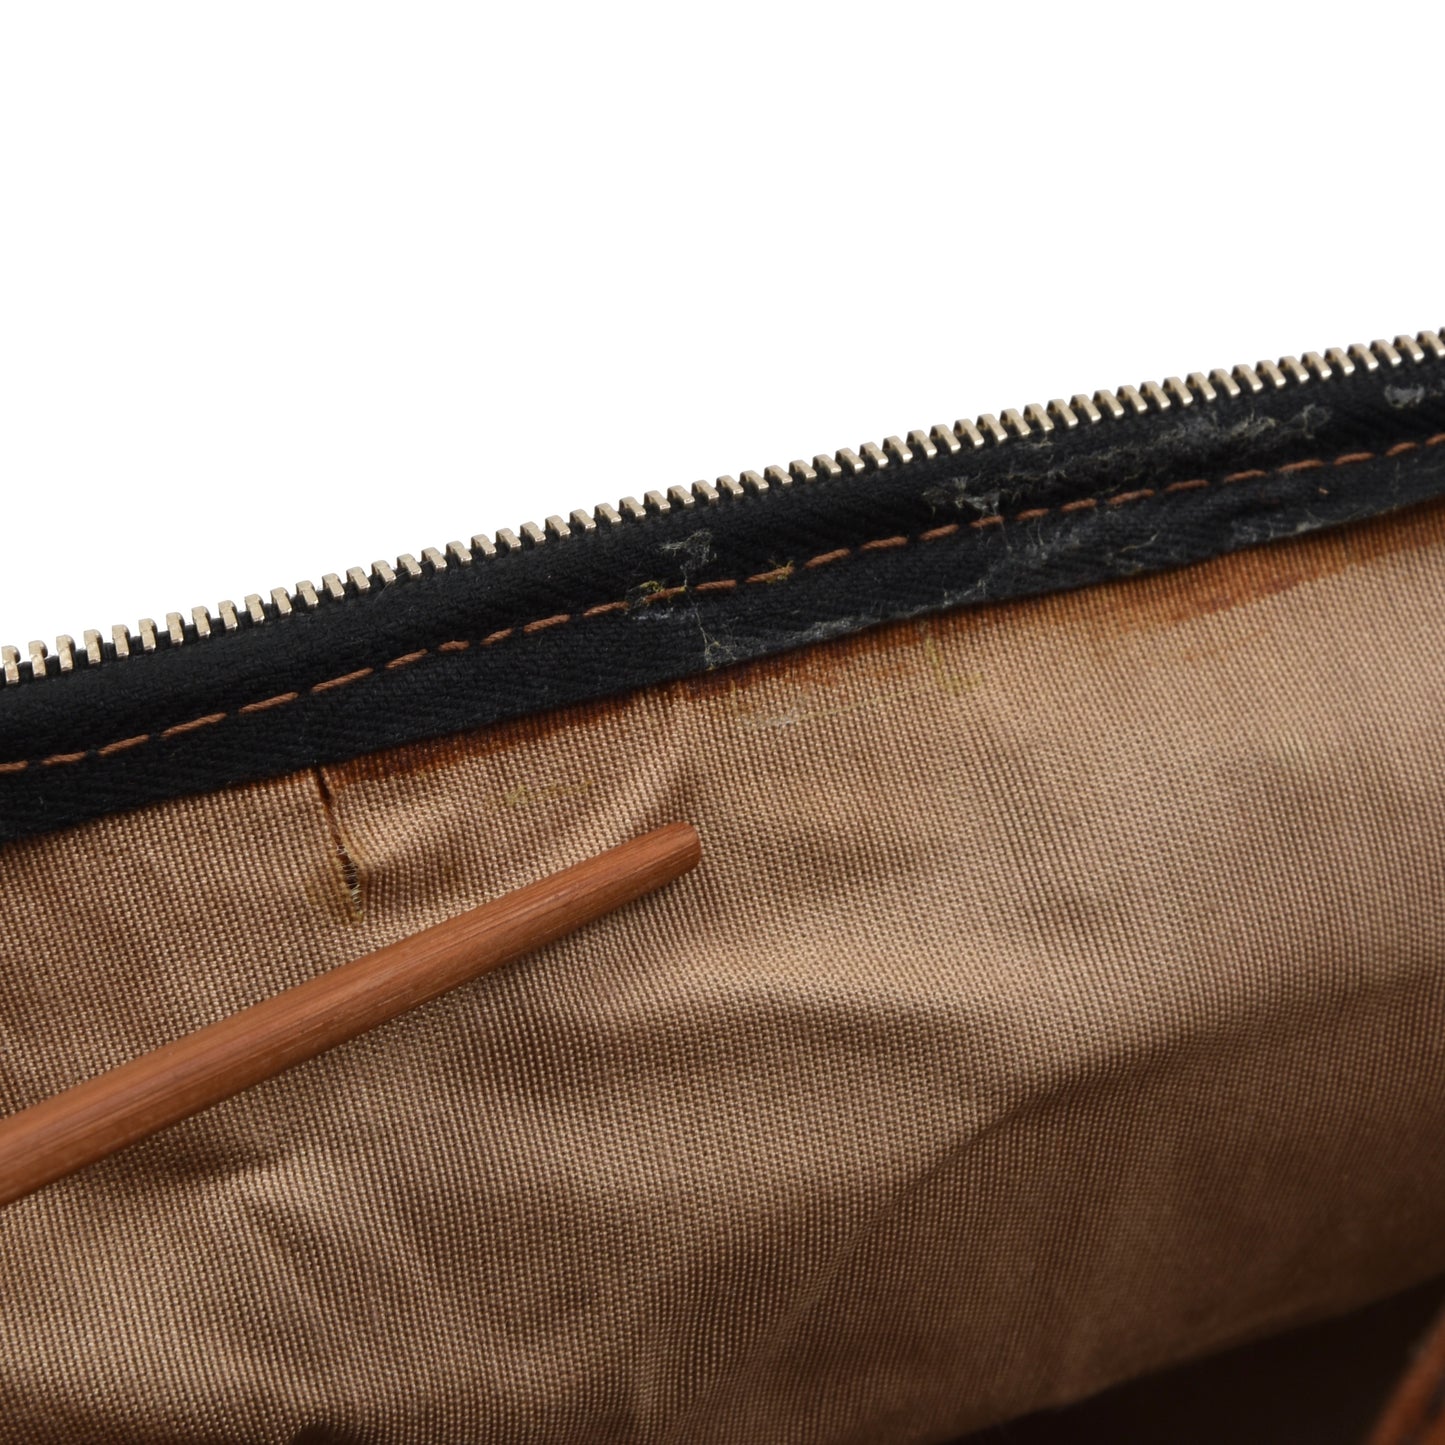 Vintage Leather Weekender/Carry-On Bag - Brown